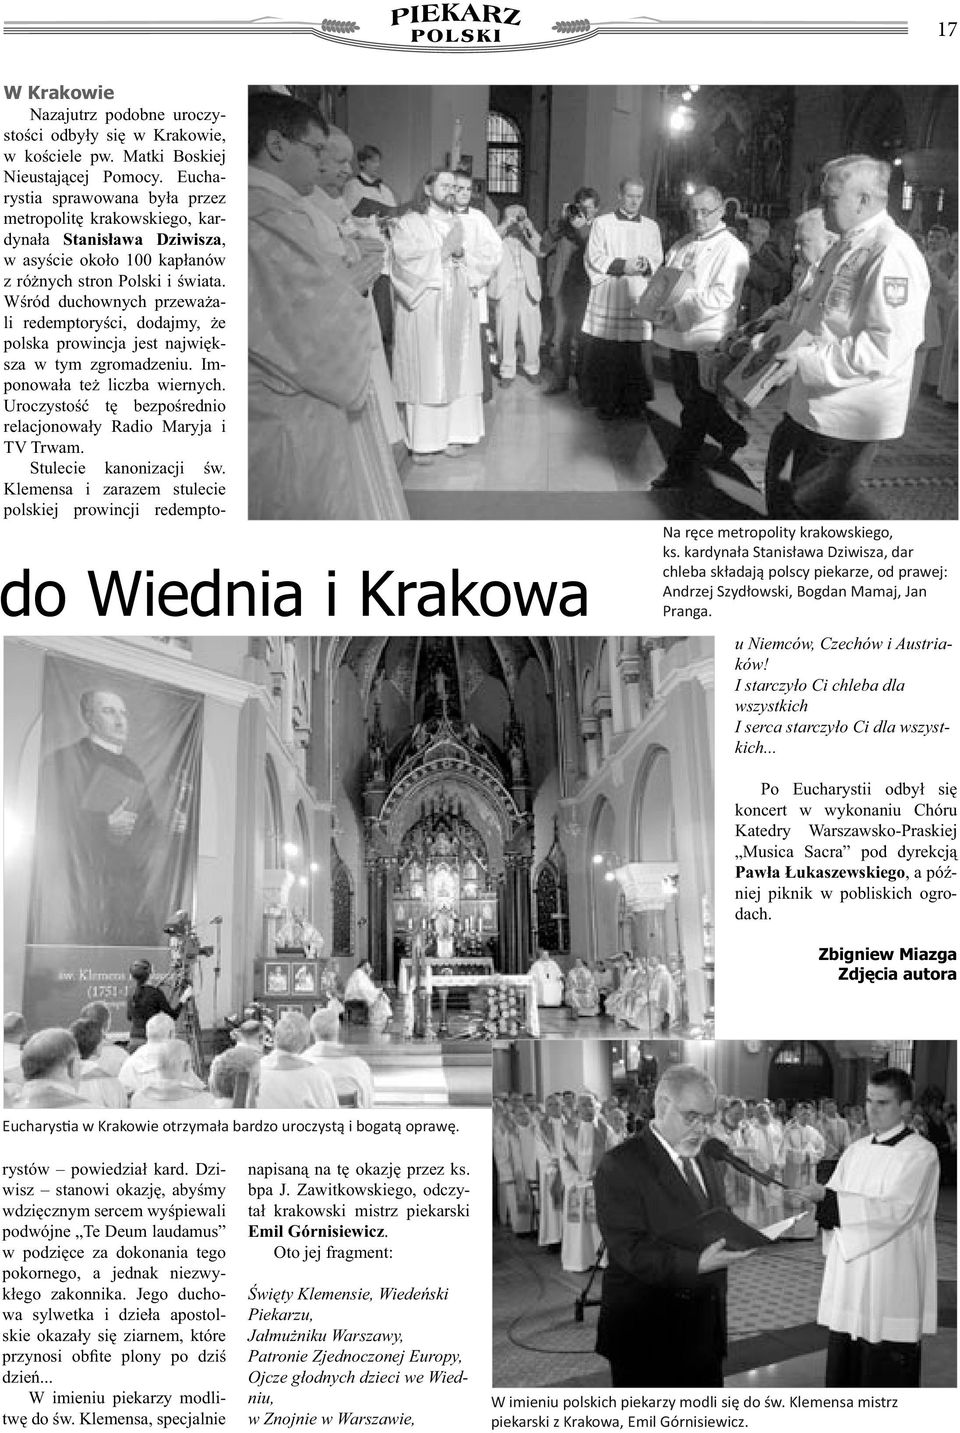 .. Po Eucharystii odbył się koncert w wykonaniu Chóru Katedry Warszawsko-Praskiej Musica Sacra pod dyrekcją Pawła Łukaszewskiego, a później piknik w pobliskich ogrodach.